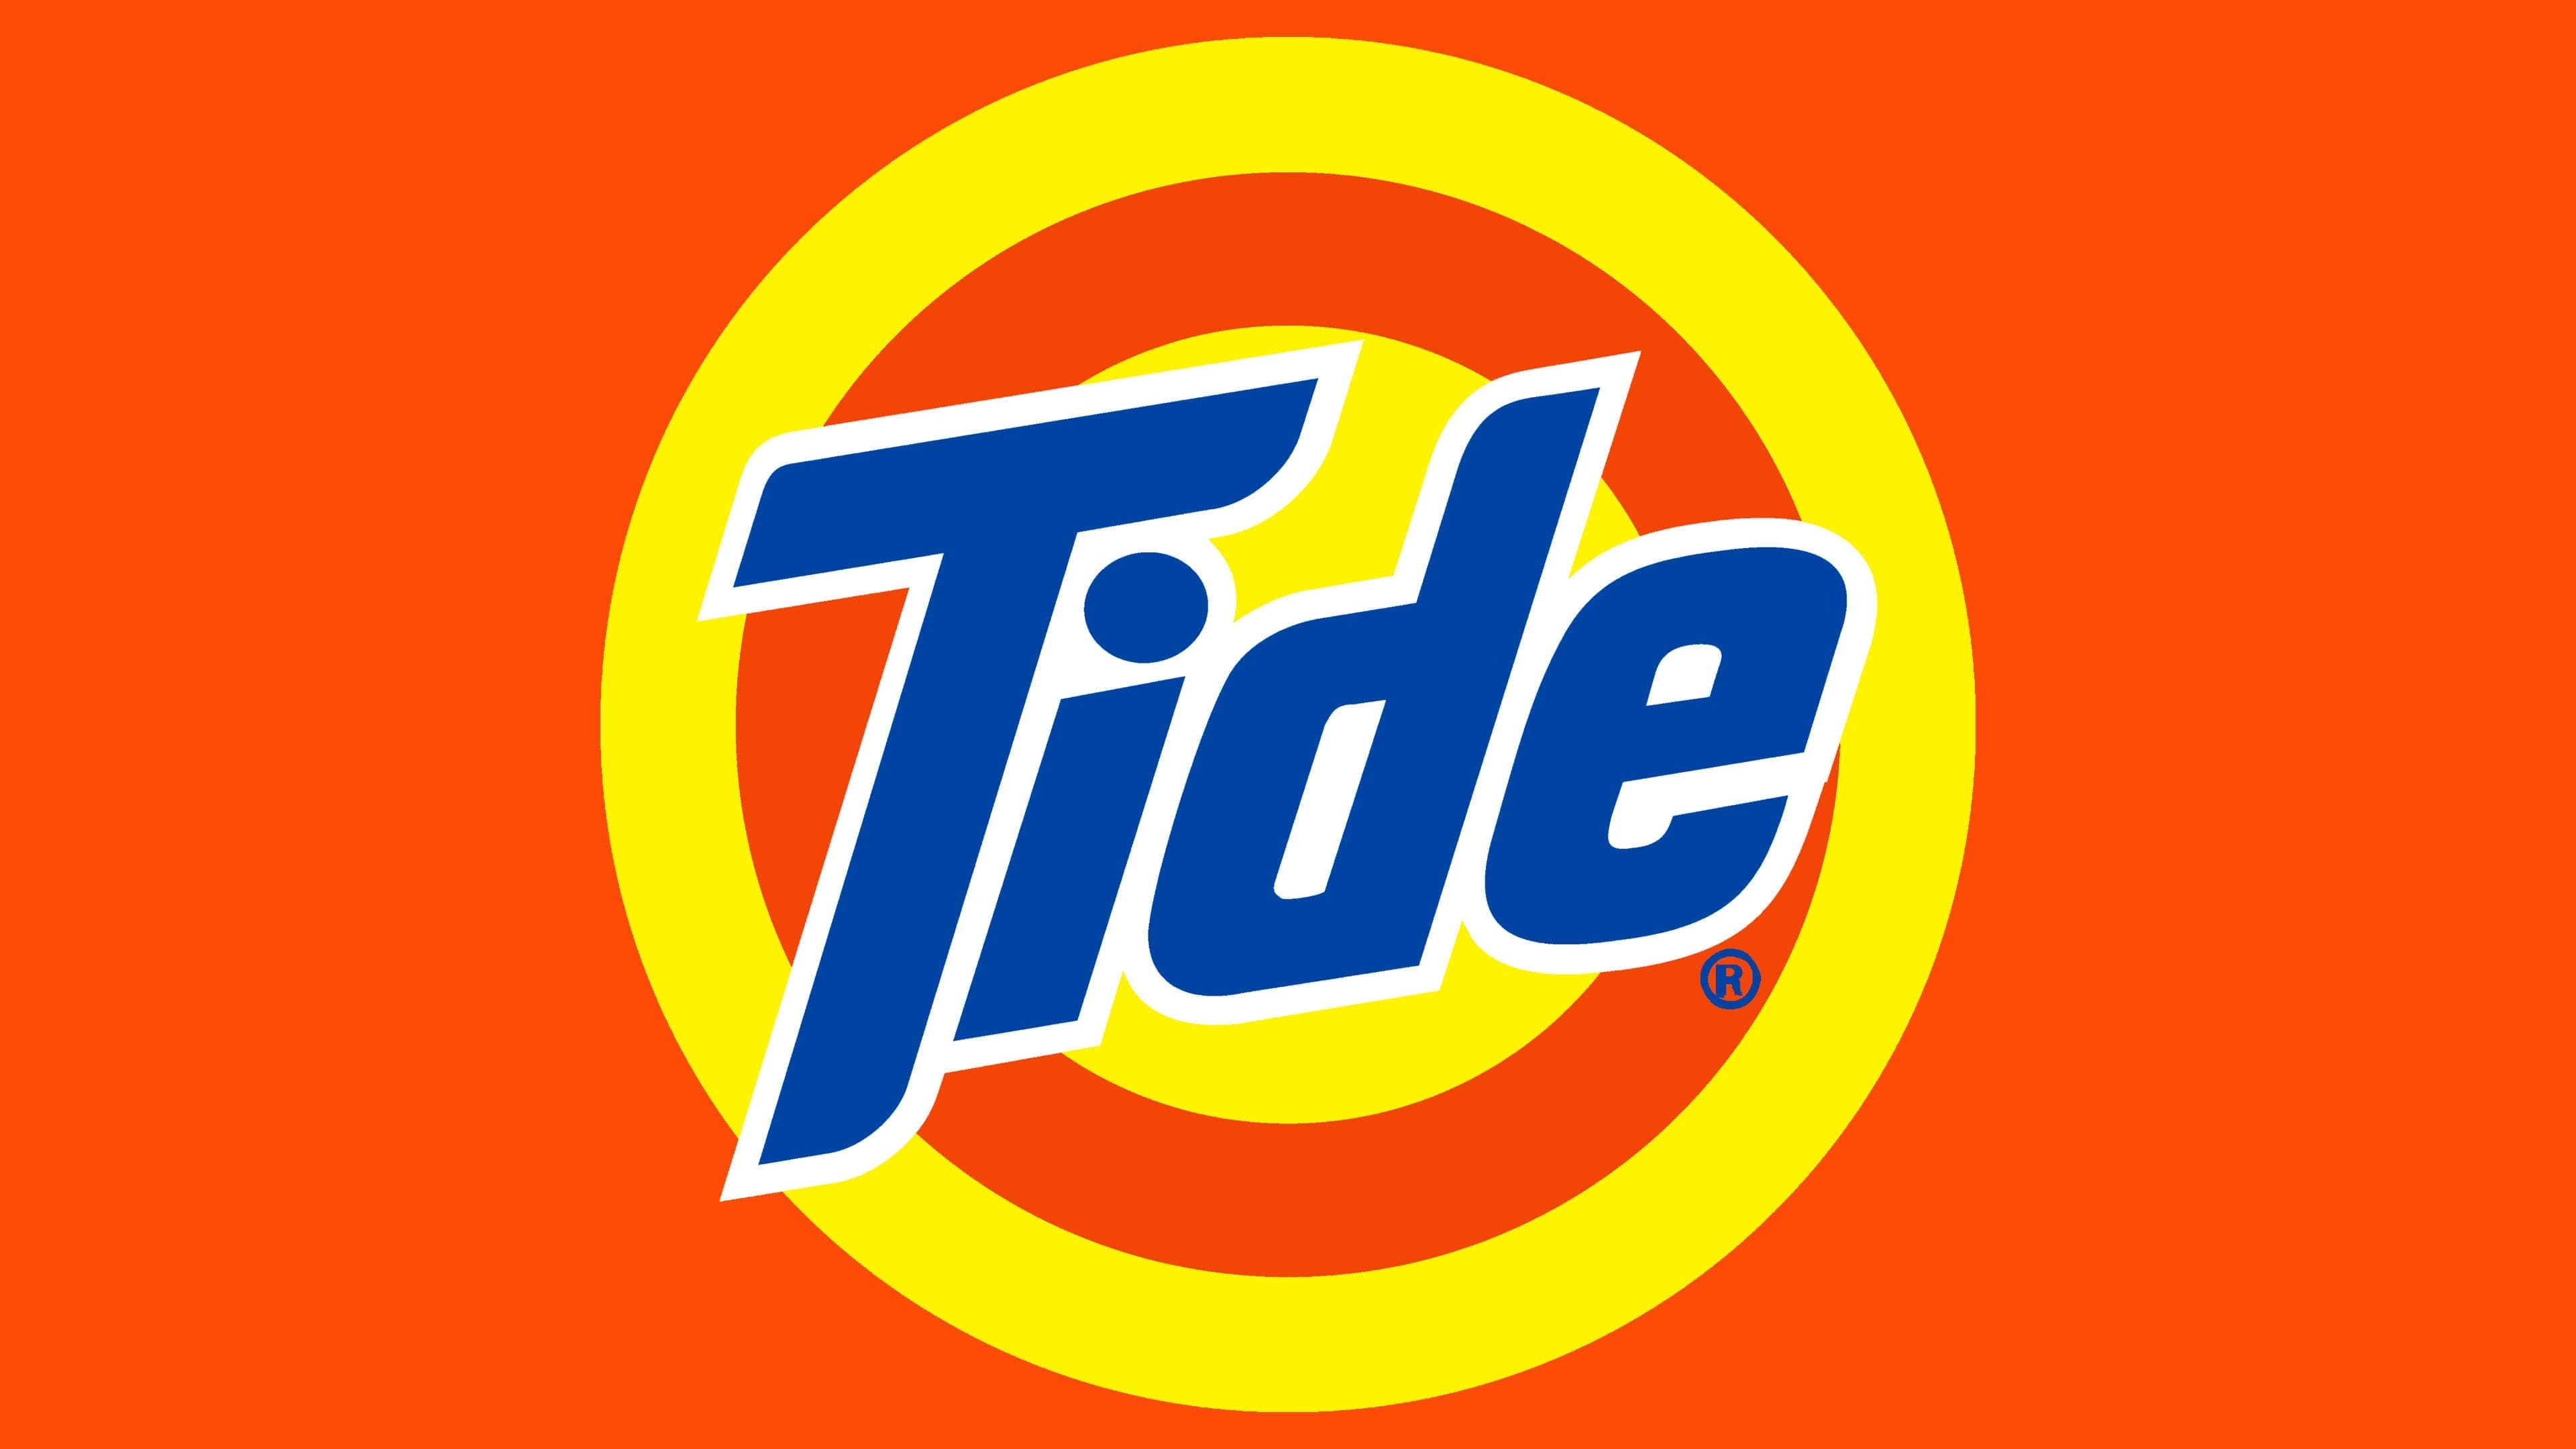 Реклама порошка тайд. Tide порошок logo. Логотип Тайд стиральный порошок. Тайд логотип PNG. Порошок Тайд товарный знак.